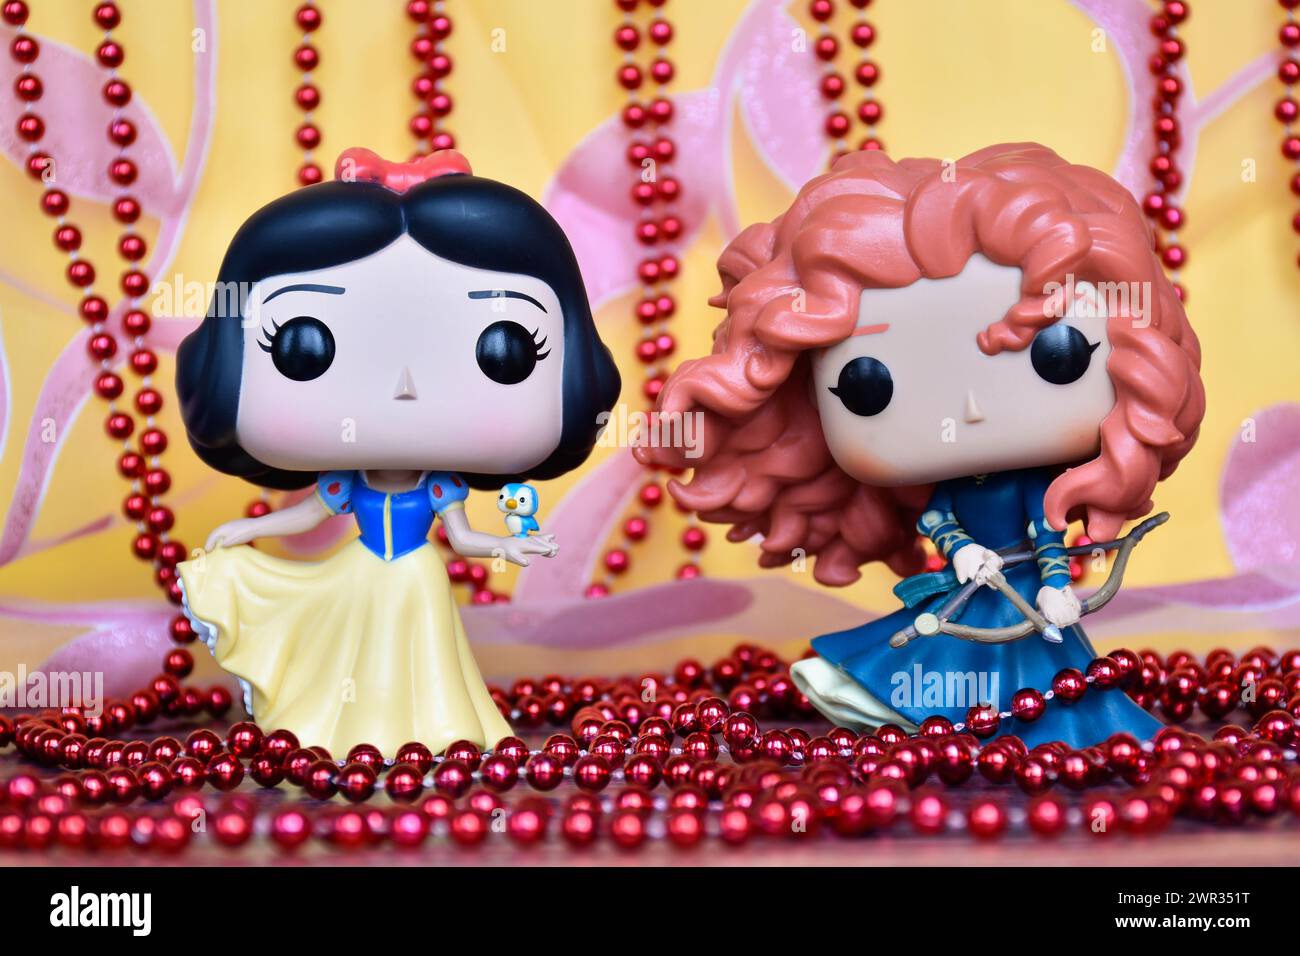 Funko Pop Actionfiguren der Disney Prinzessinnen Schneewittchen und Merida (tapfer). Goldener rosa Vorhang, rote Halskette, fabelhafter Palast. Stockfoto